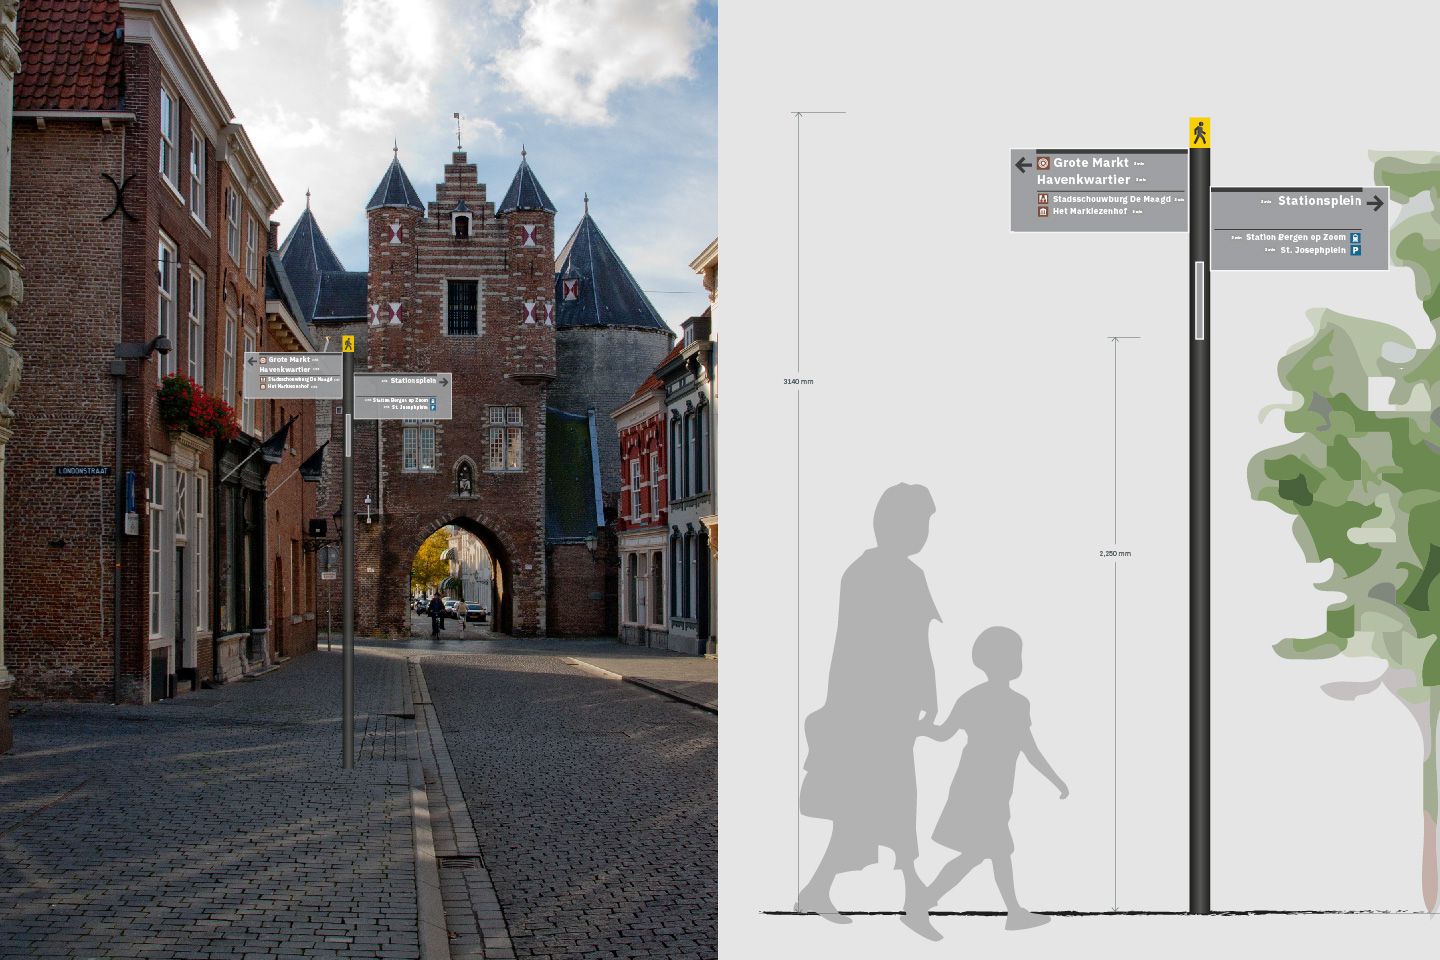 City Wayfinding for Bergen op Zoom example of fingerpost directional sign